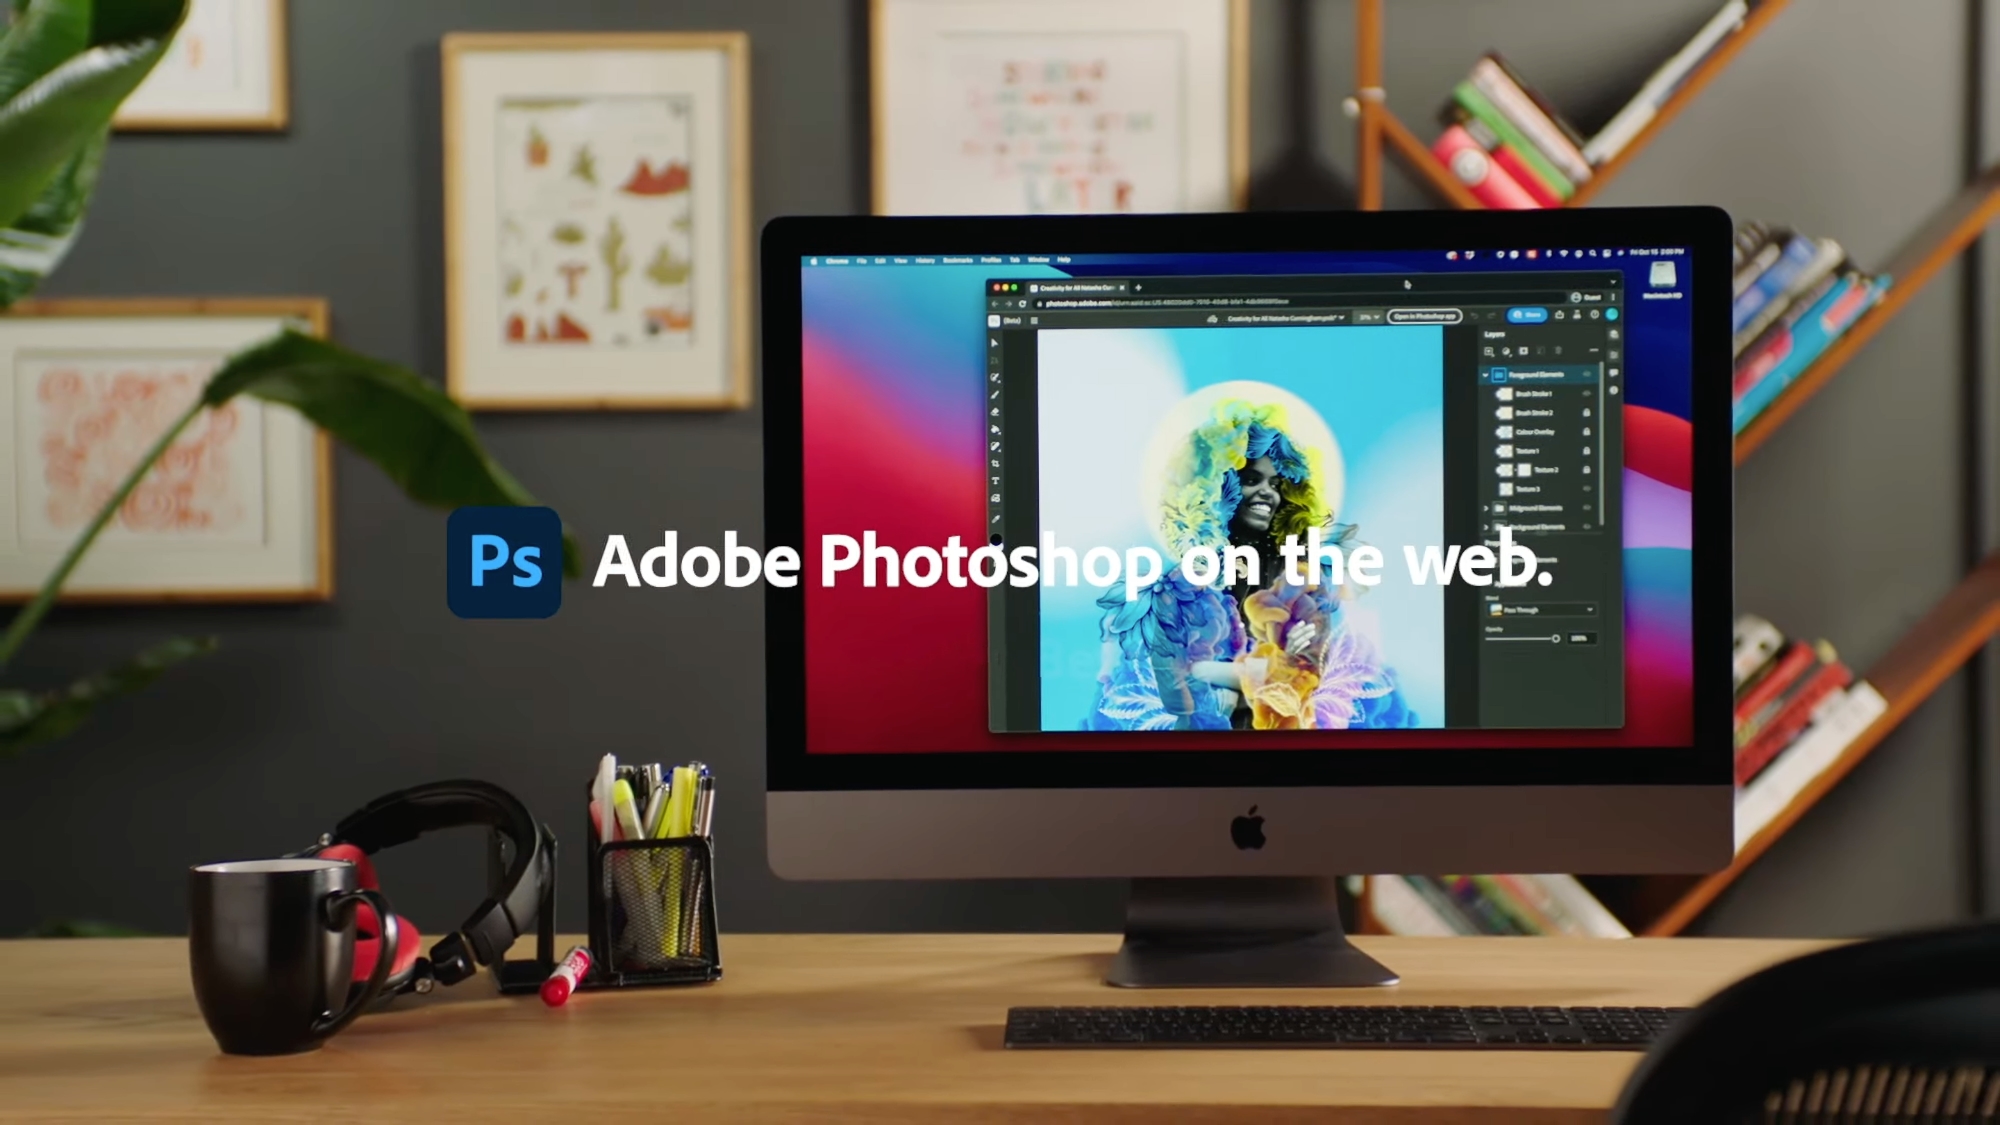 Adobe ha anunciado una versión web de Photoshop y una importante actualización de la aplicación para iPad